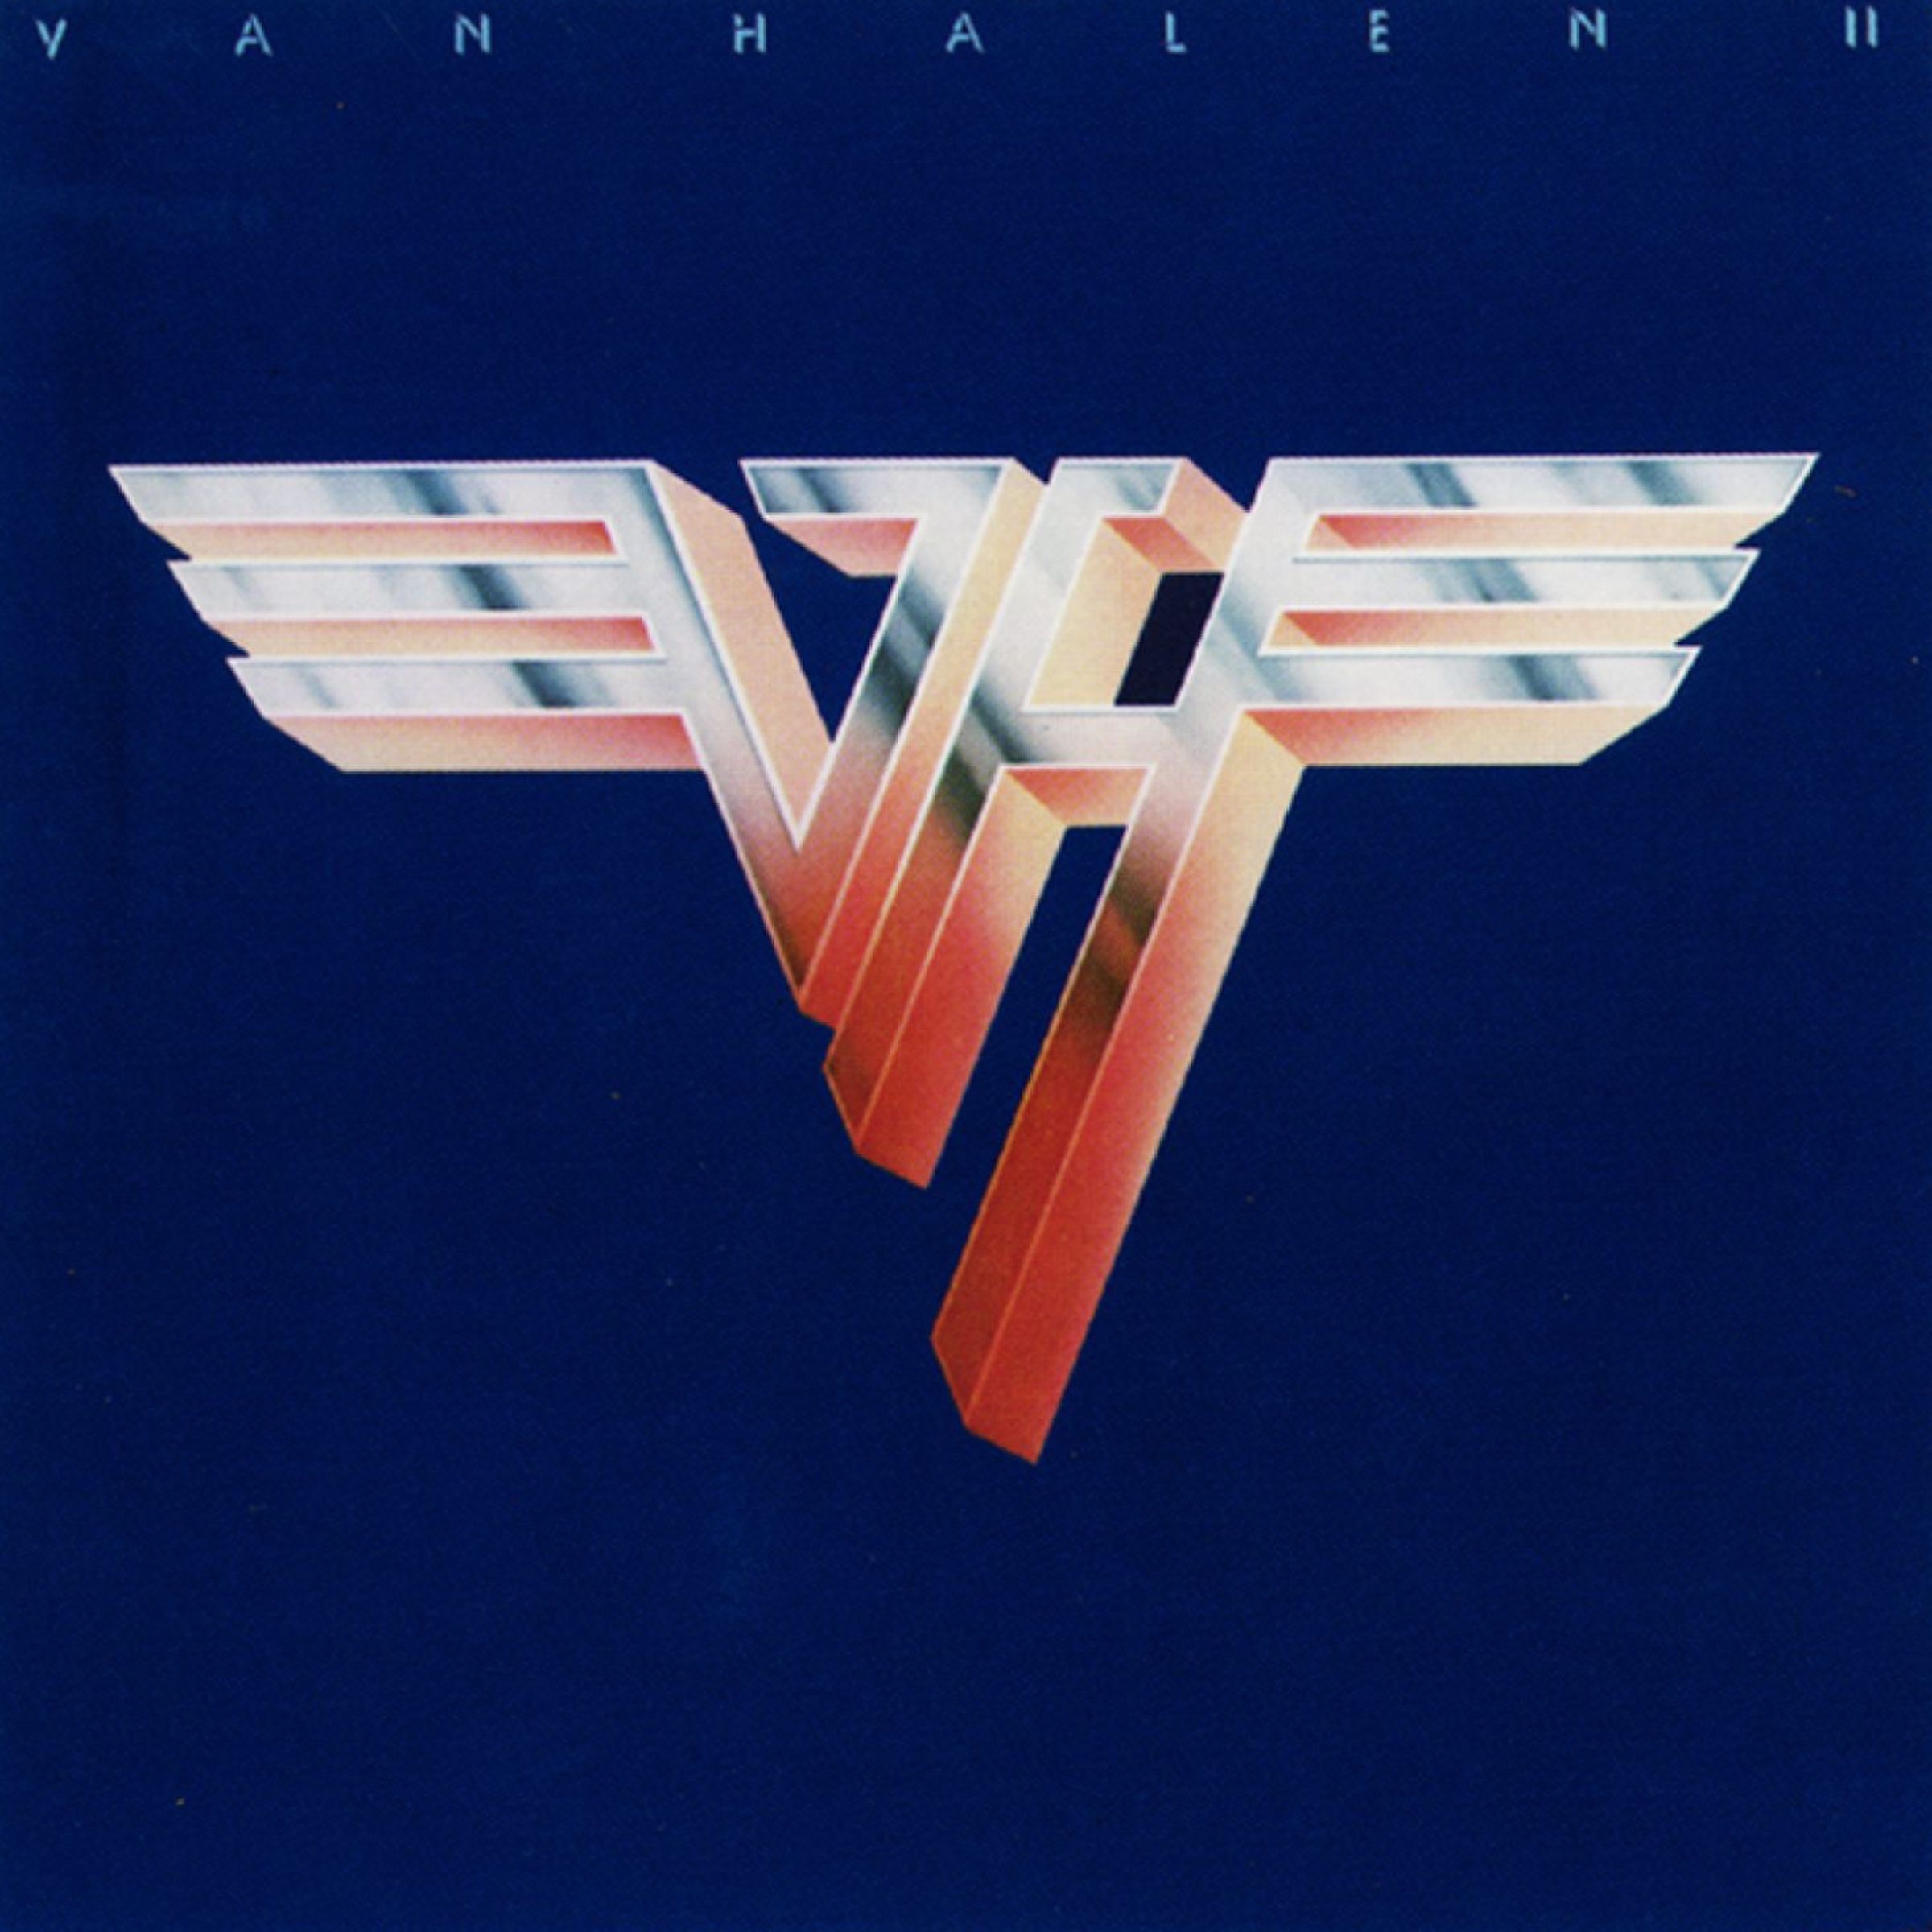 Van Halen - 5150 [HDTracks] (2013)